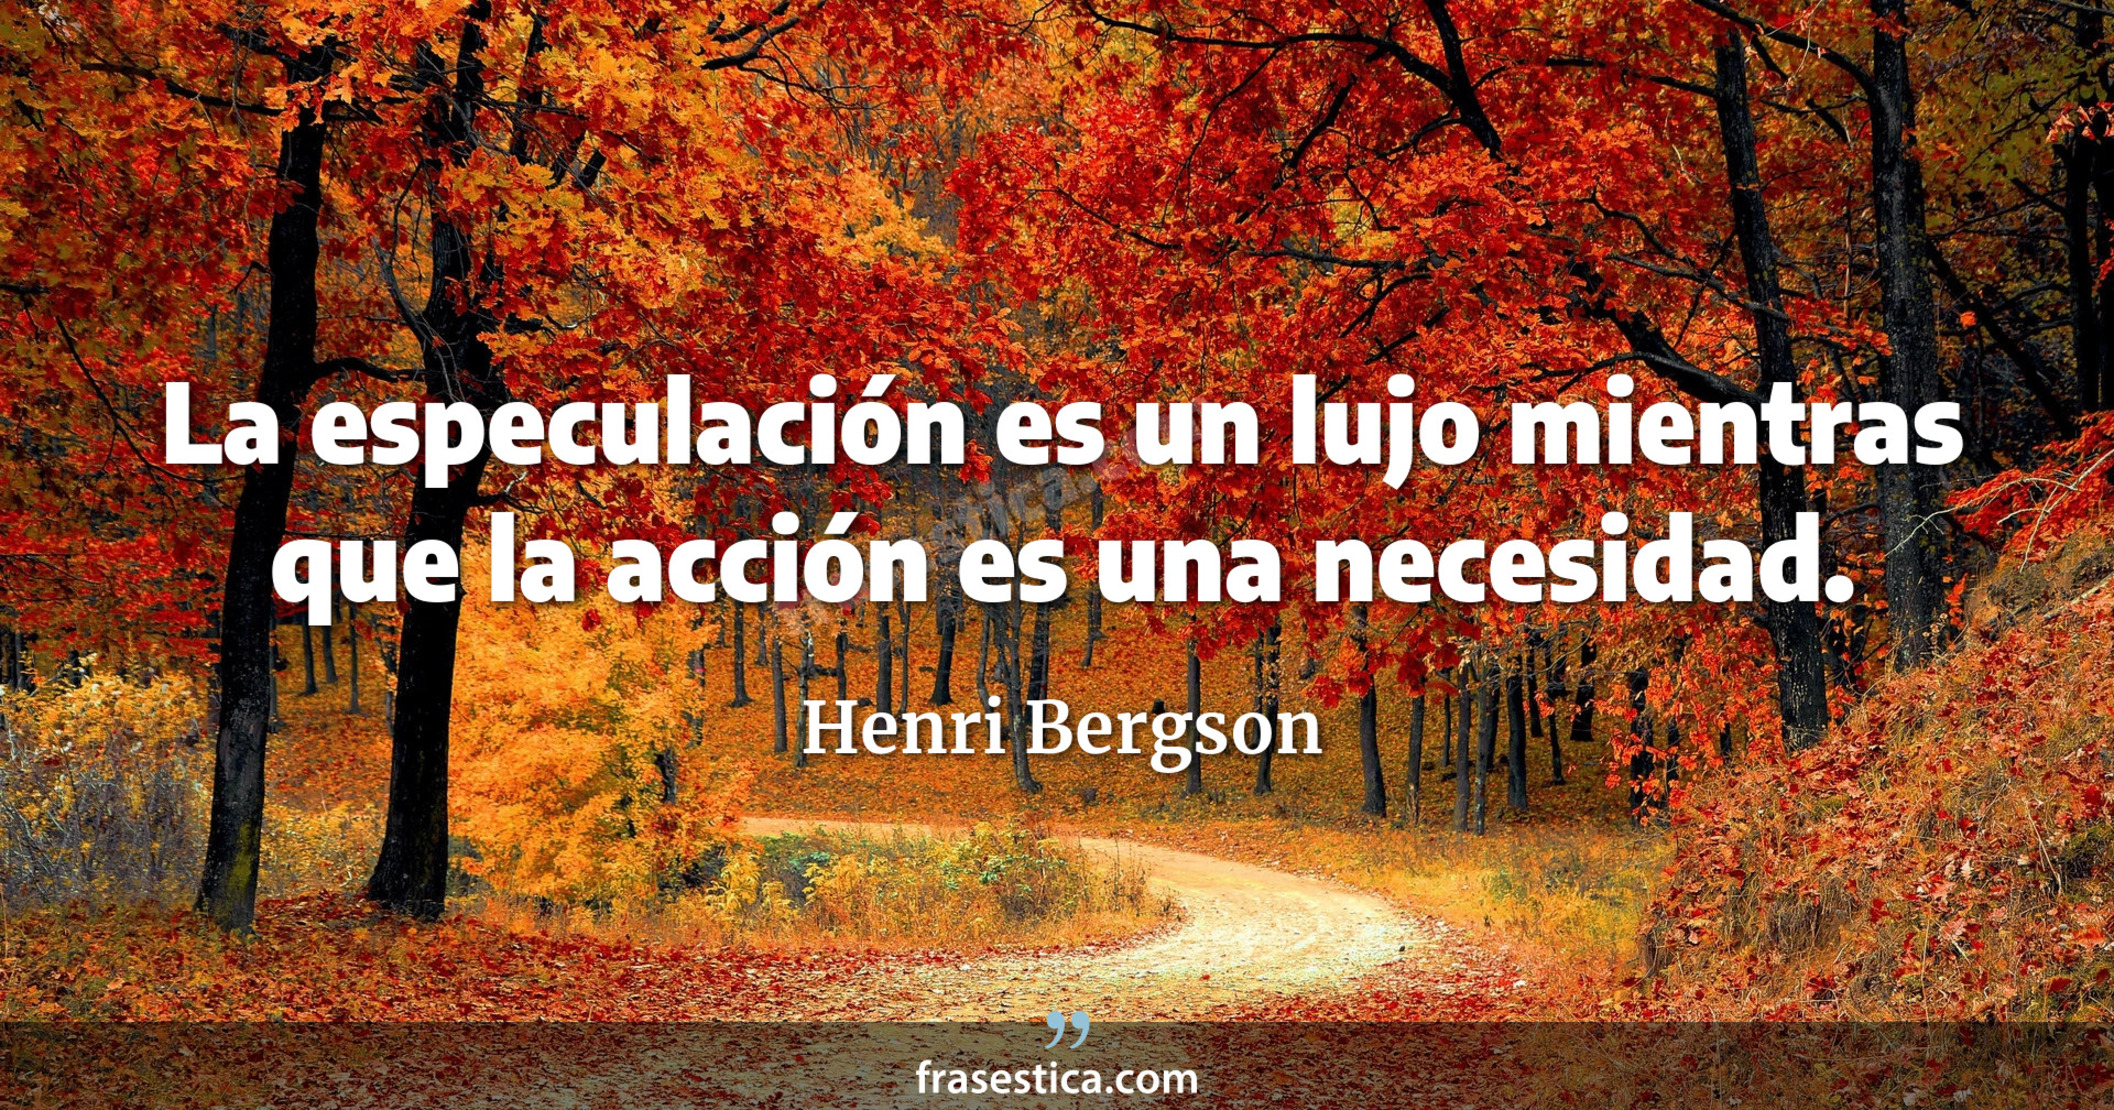 La especulación es un lujo mientras que la acción es una necesidad. - Henri Bergson